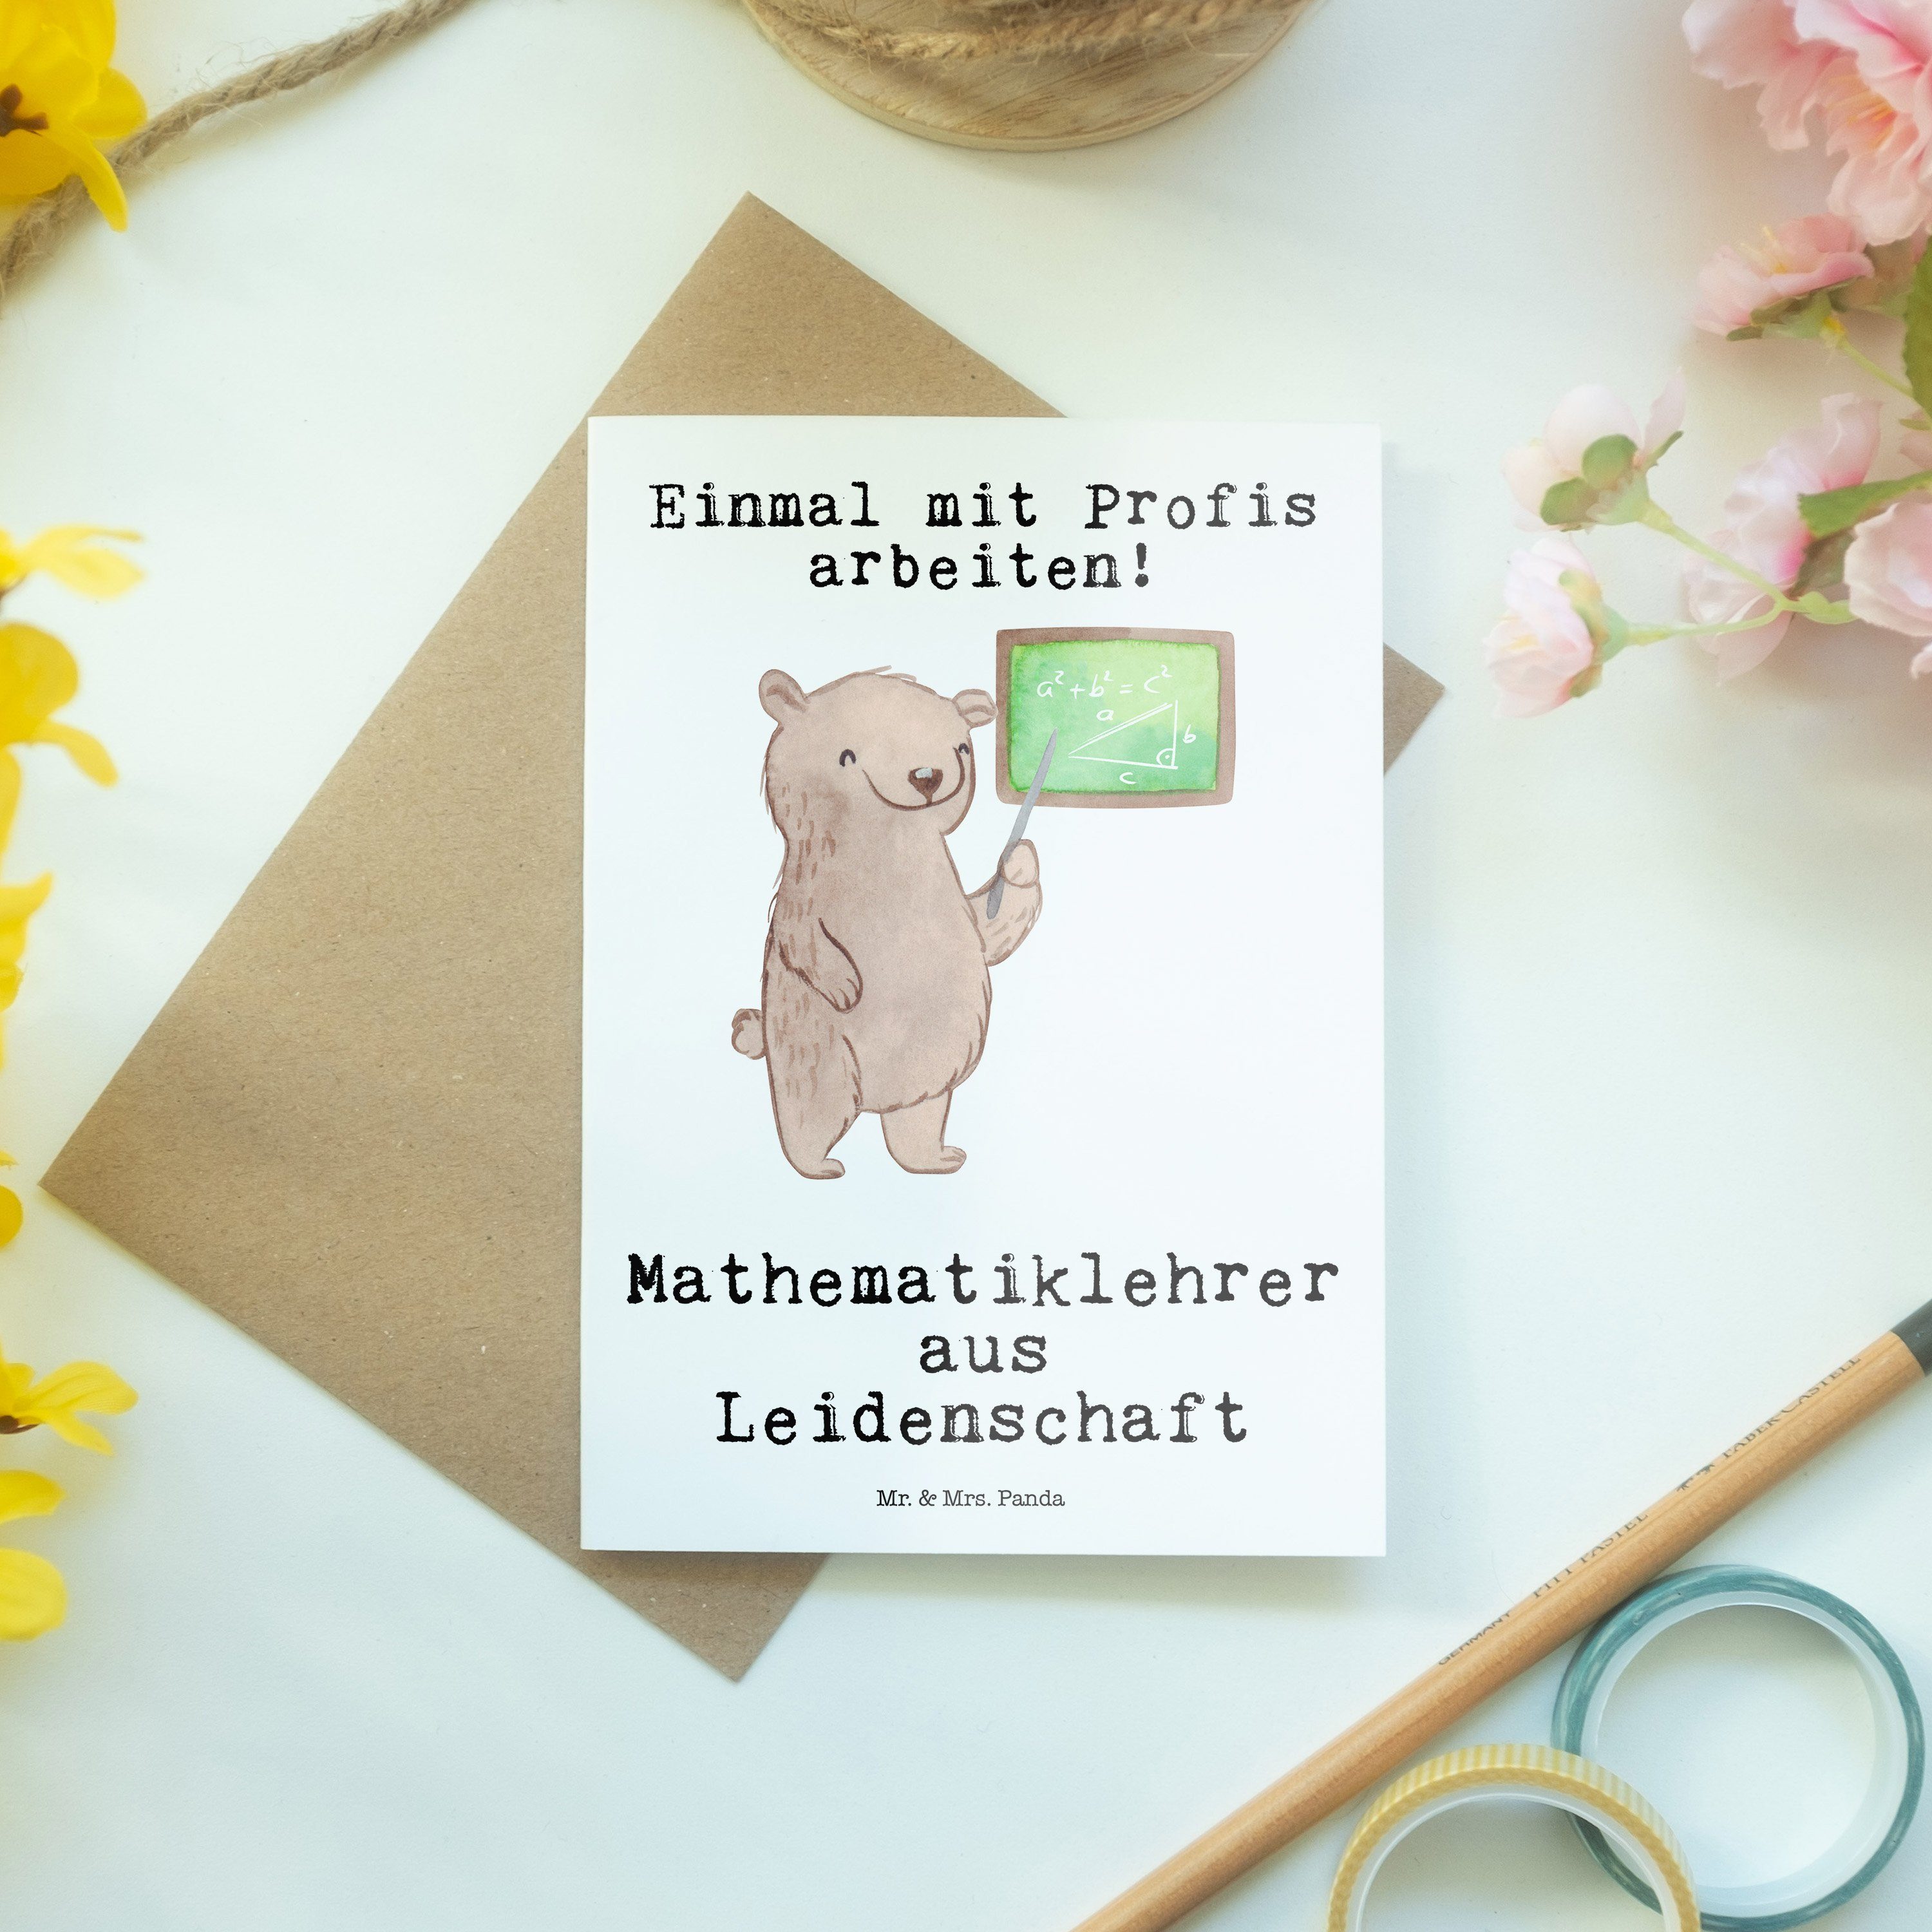 Mathematiklehrer Panda - - Mrs. Kollegin, & Hochze aus Weiß Leidenschaft Geschenk, Grußkarte Mr.